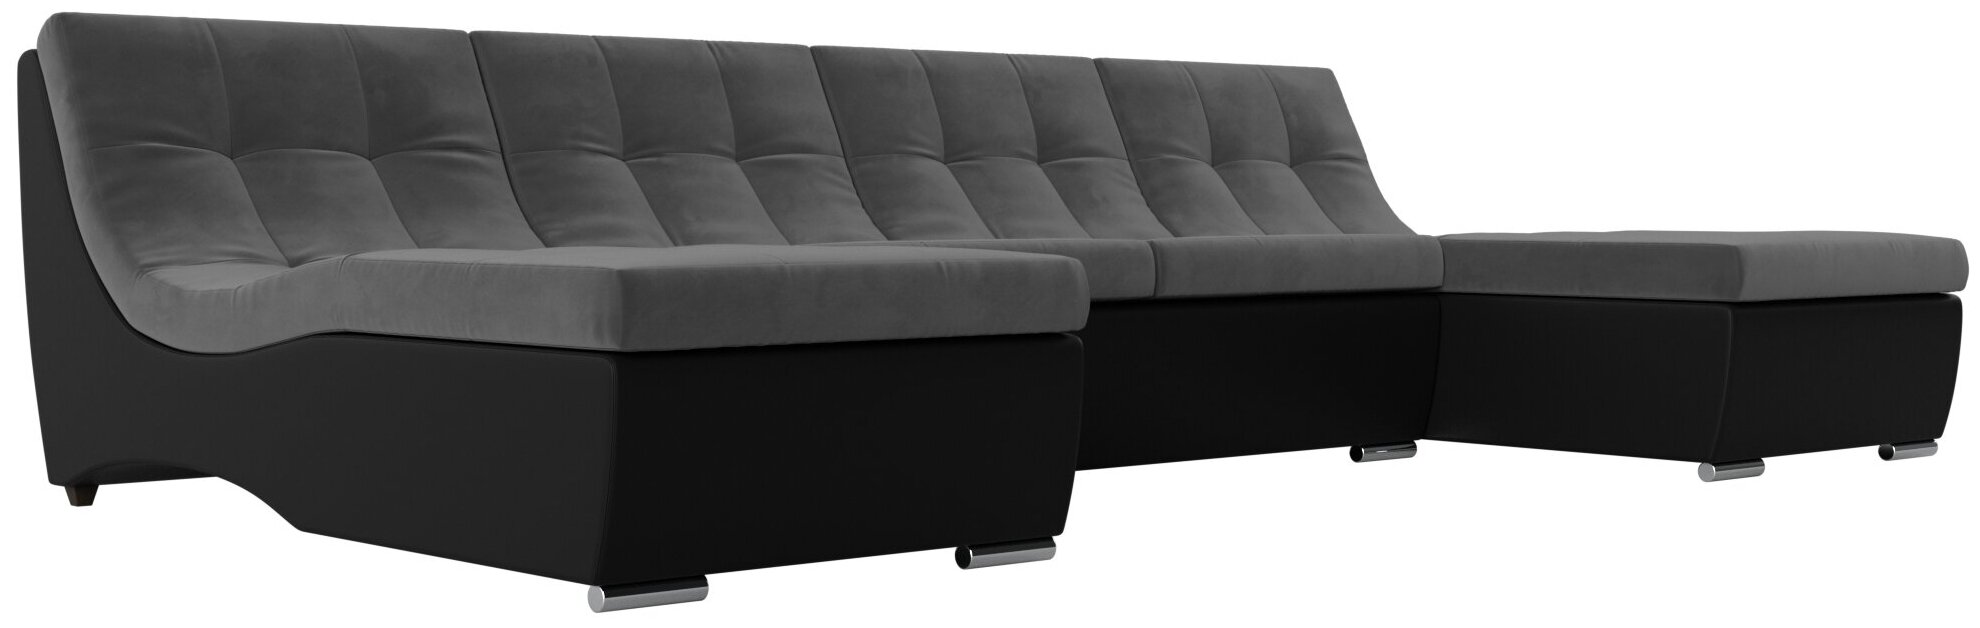 П-образный модульный диван Монреаль, Велюр, Модель 111552